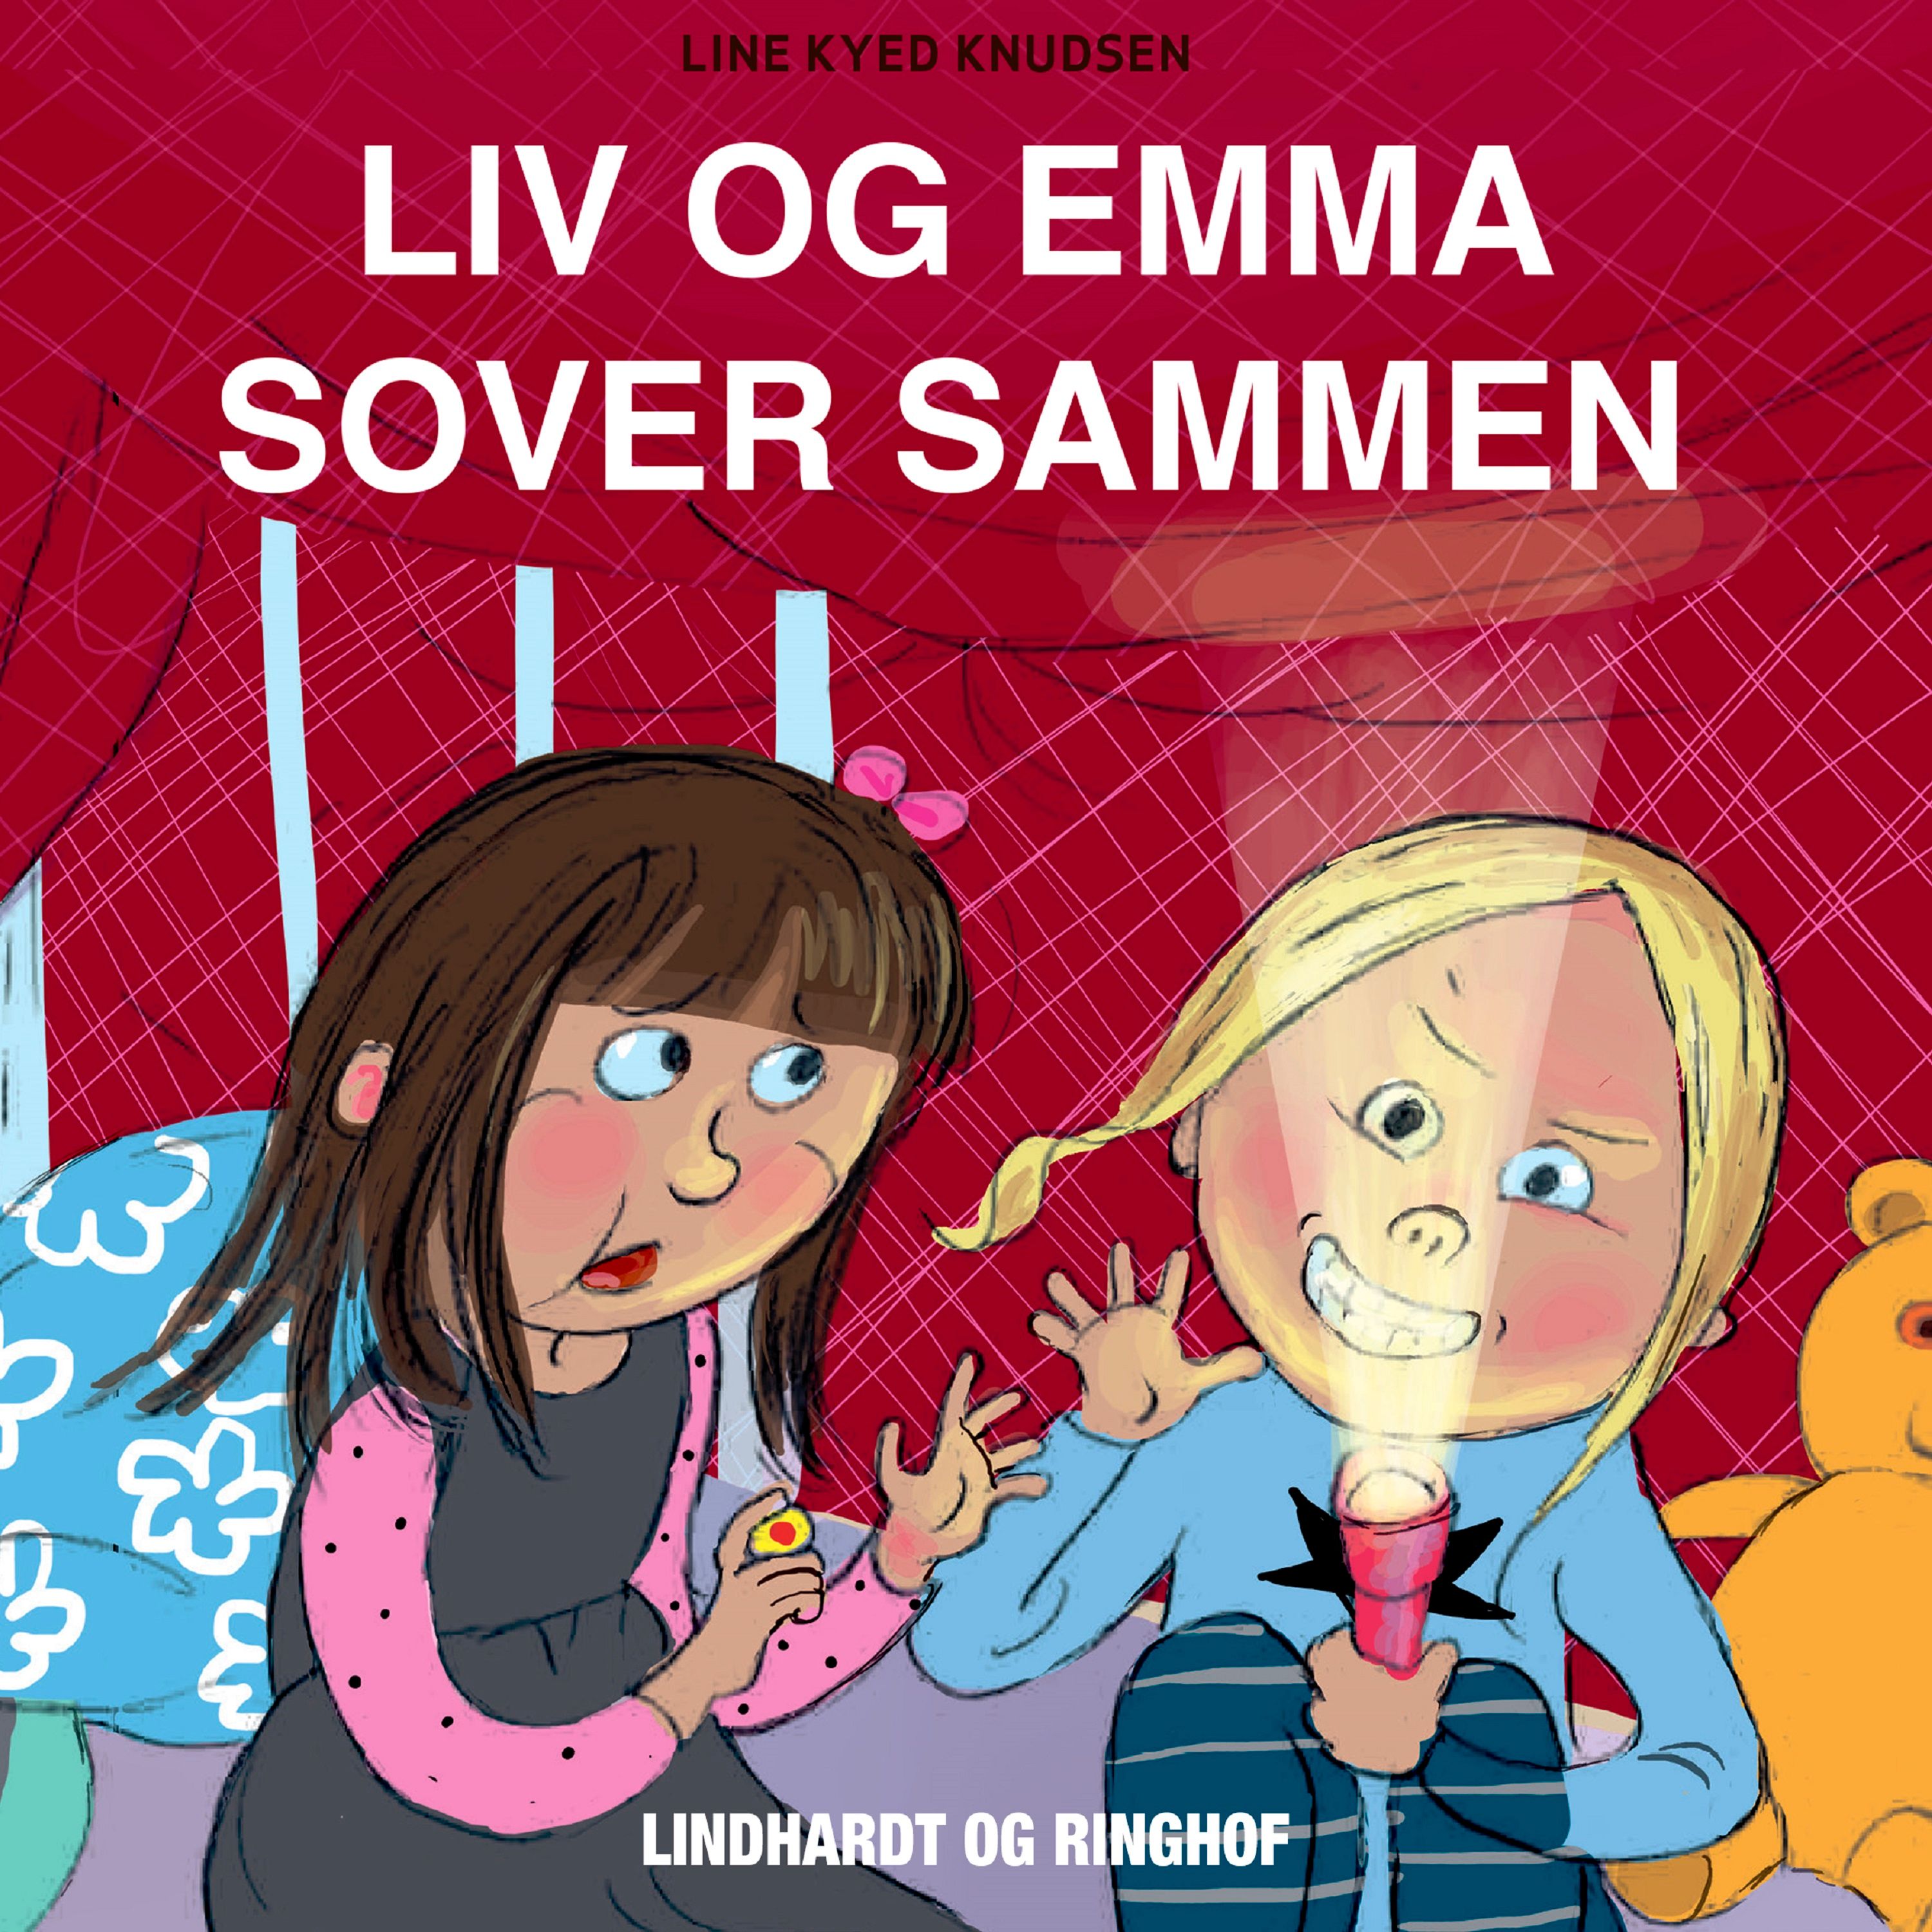 Liv og Emma sover sammen, lydbog af Line Kyed Knudsen